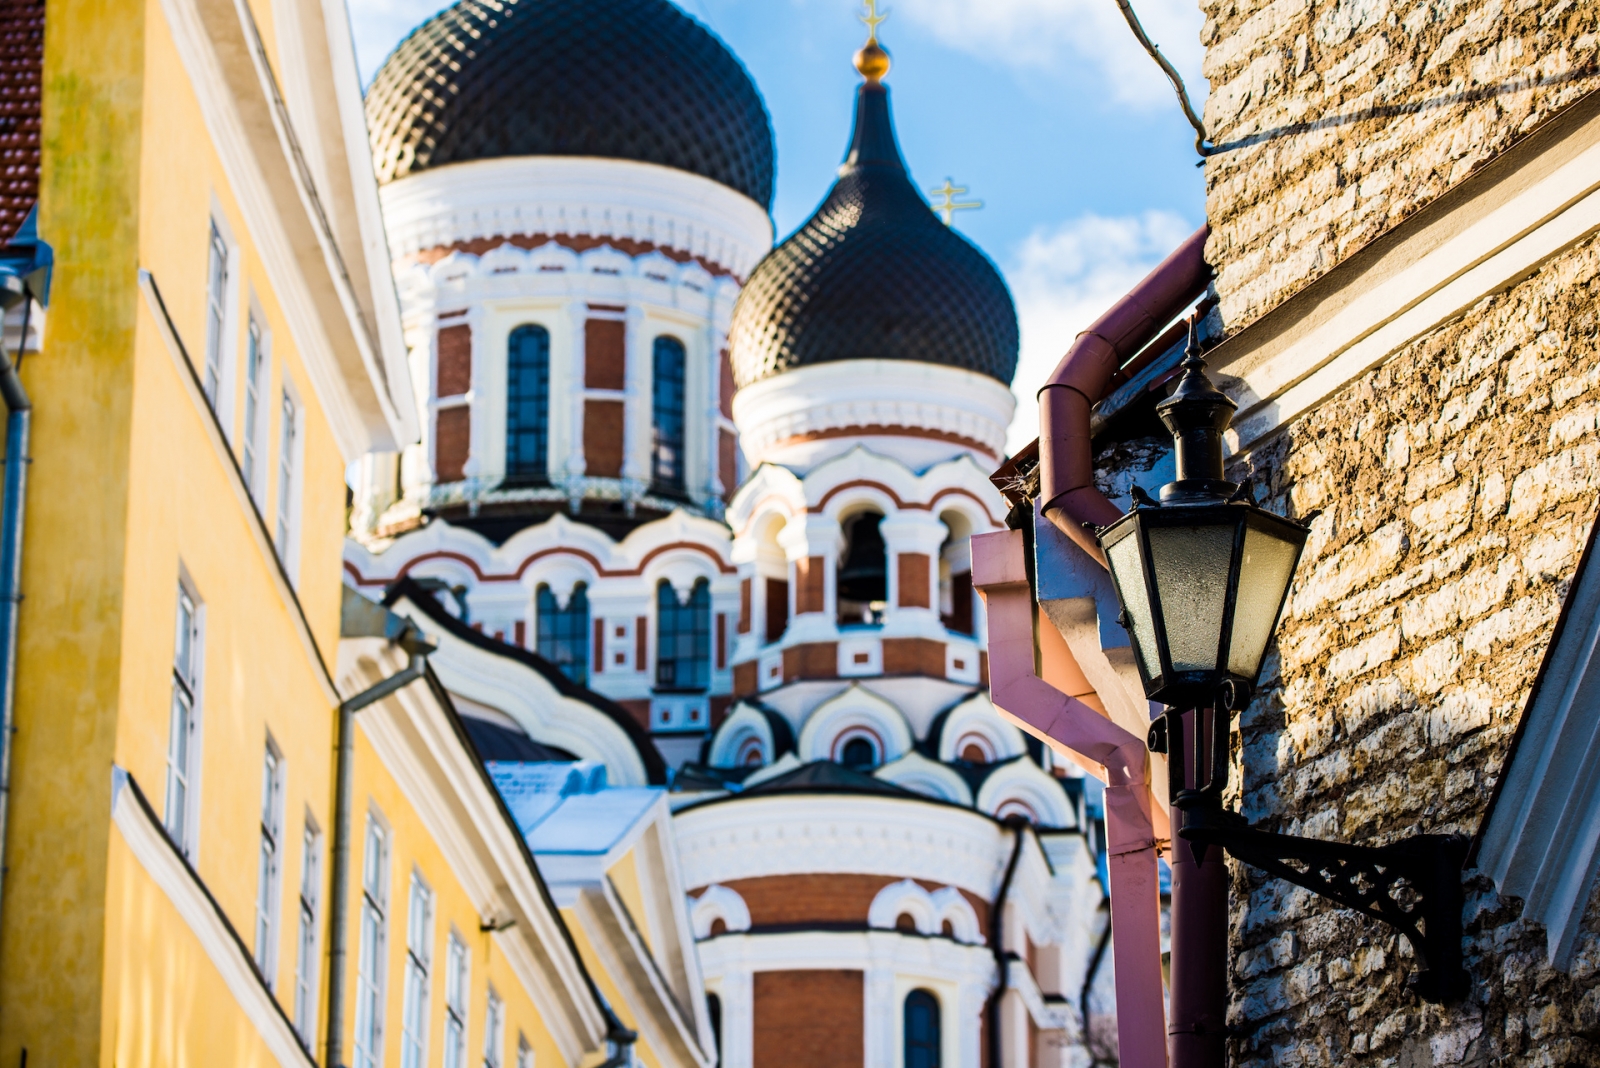 Hiver.  Vieille ville de Tallinn, Estonie, par une belle journée ensoleillée.  Gros plan sur la cathédrale Alexandre Nevski